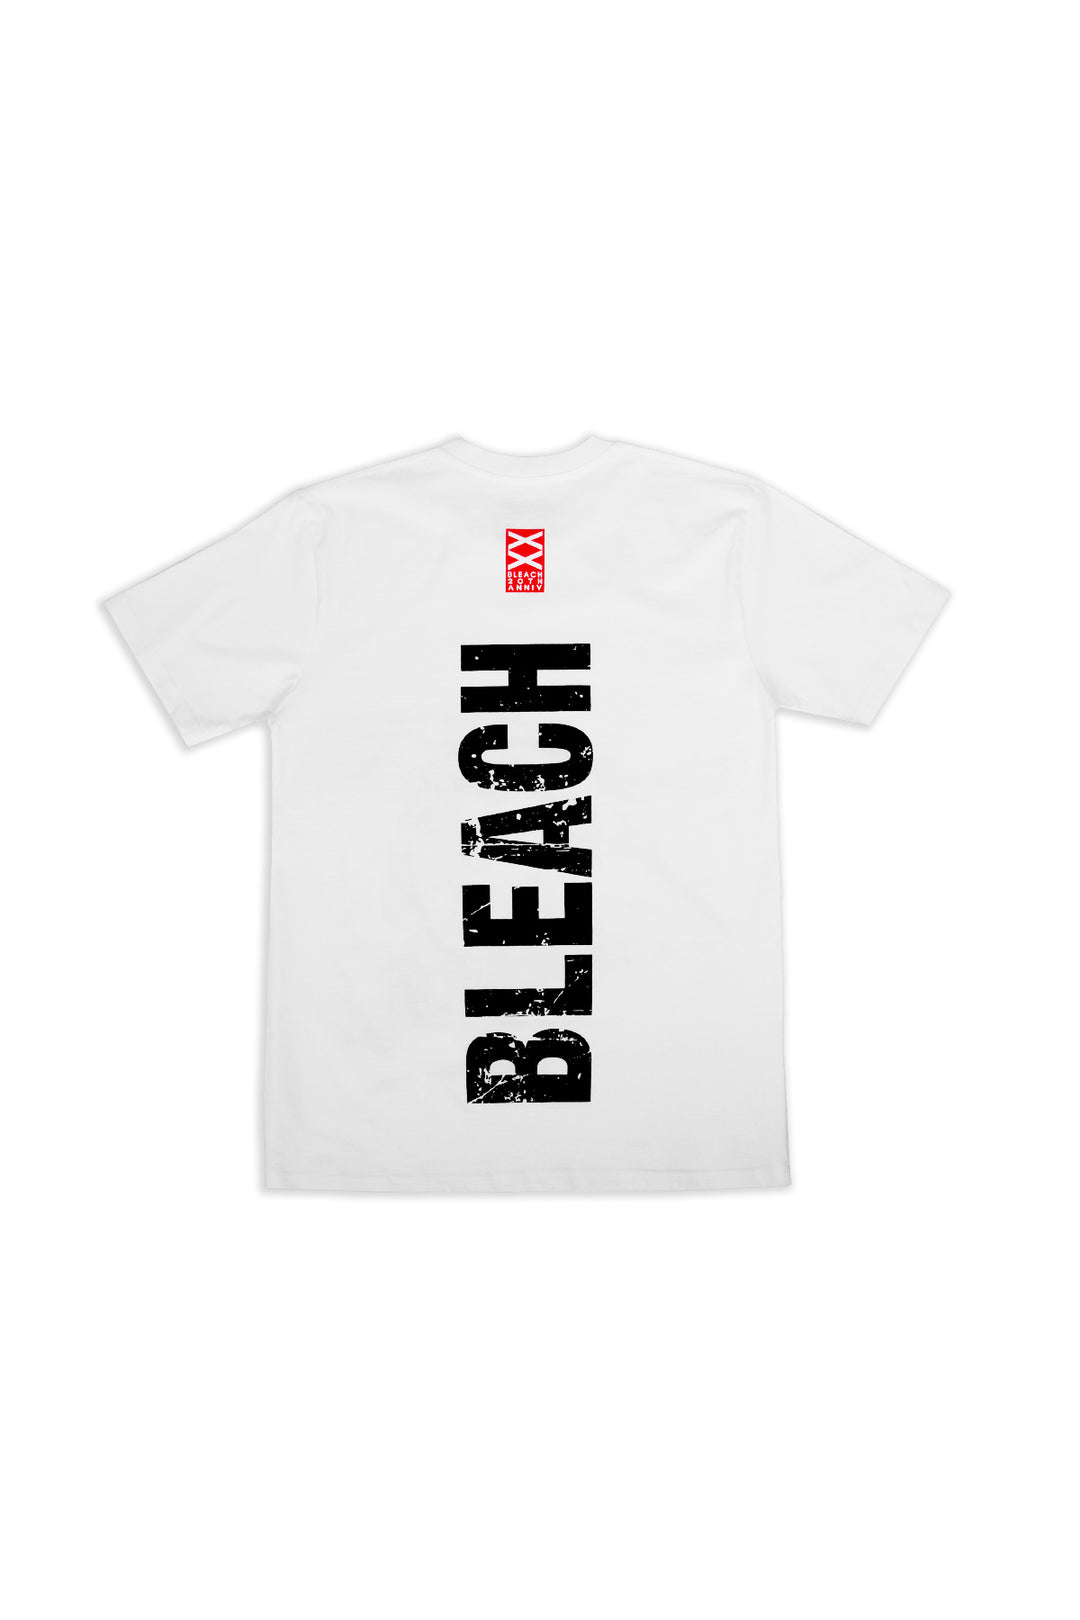 Bleach Renji Tee - Back